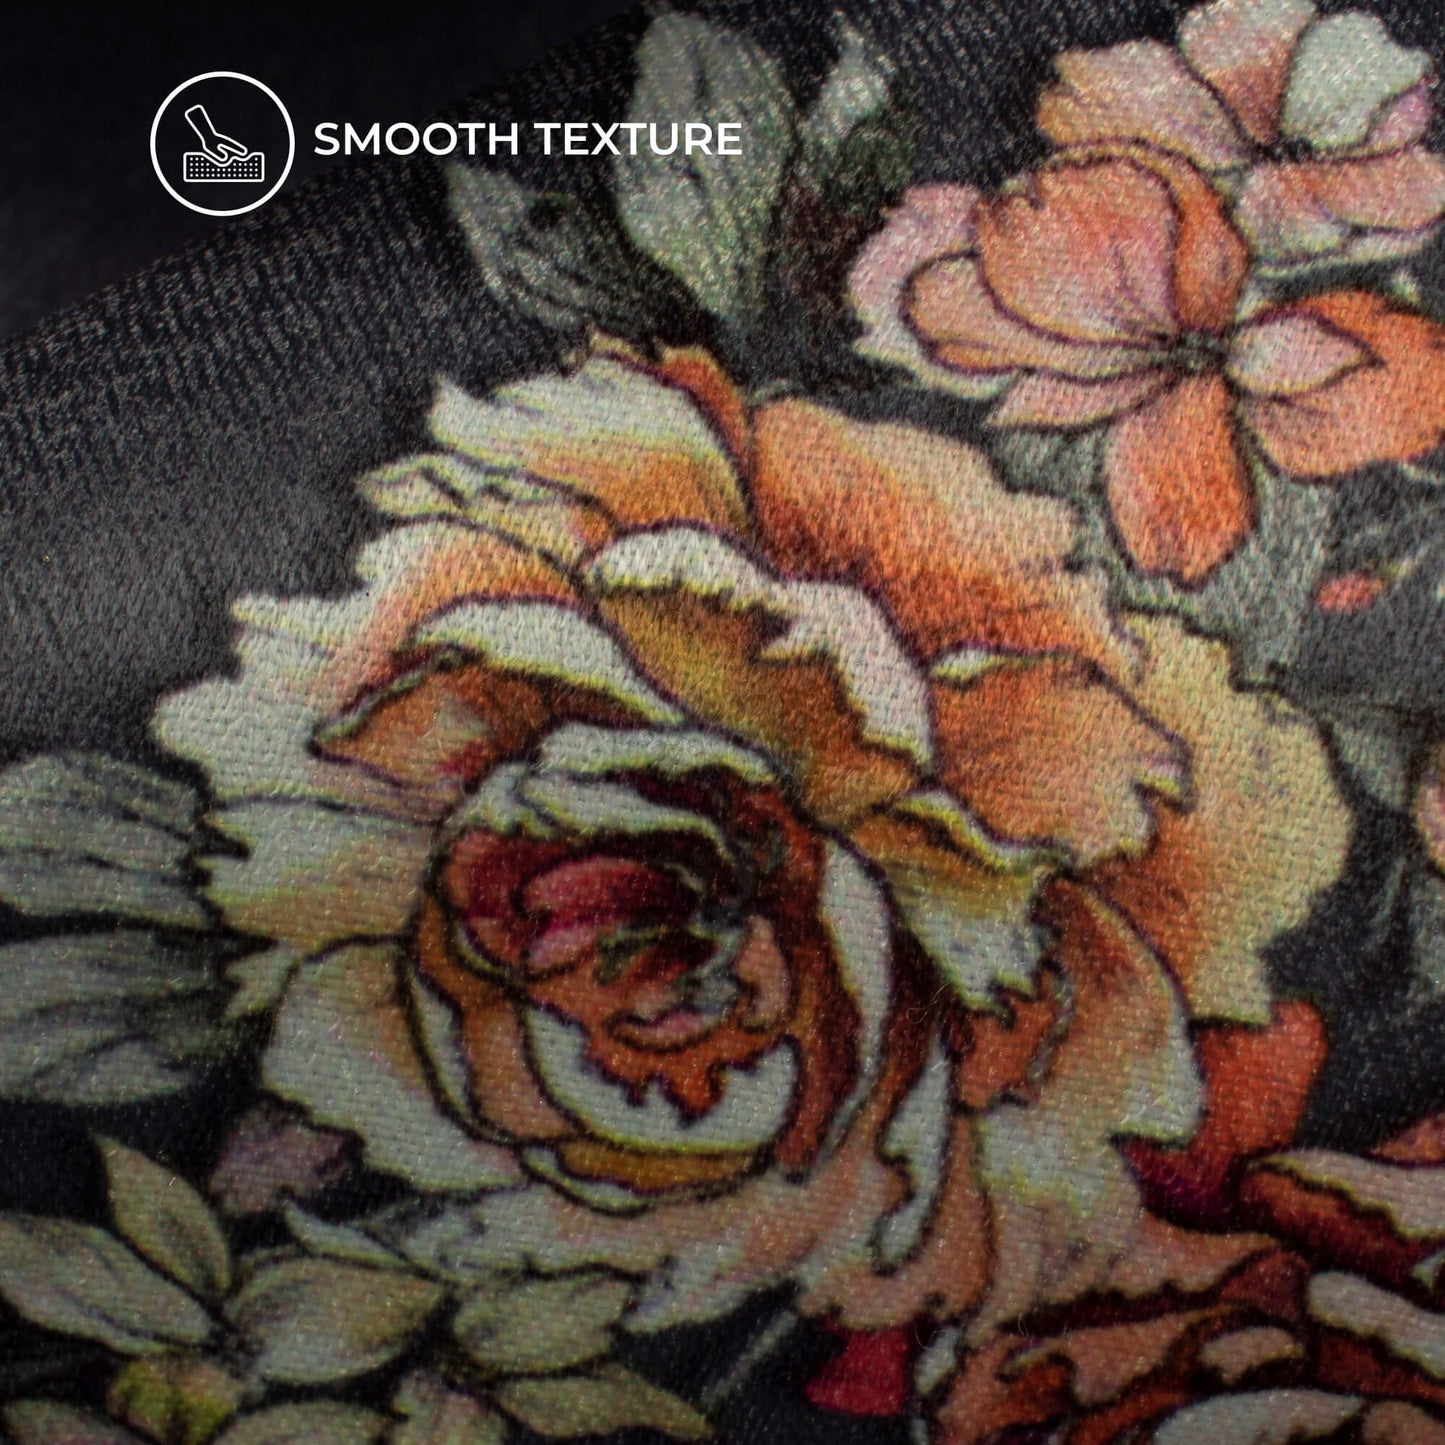 Lavish Floral Digital Print Lush Satin Fabric